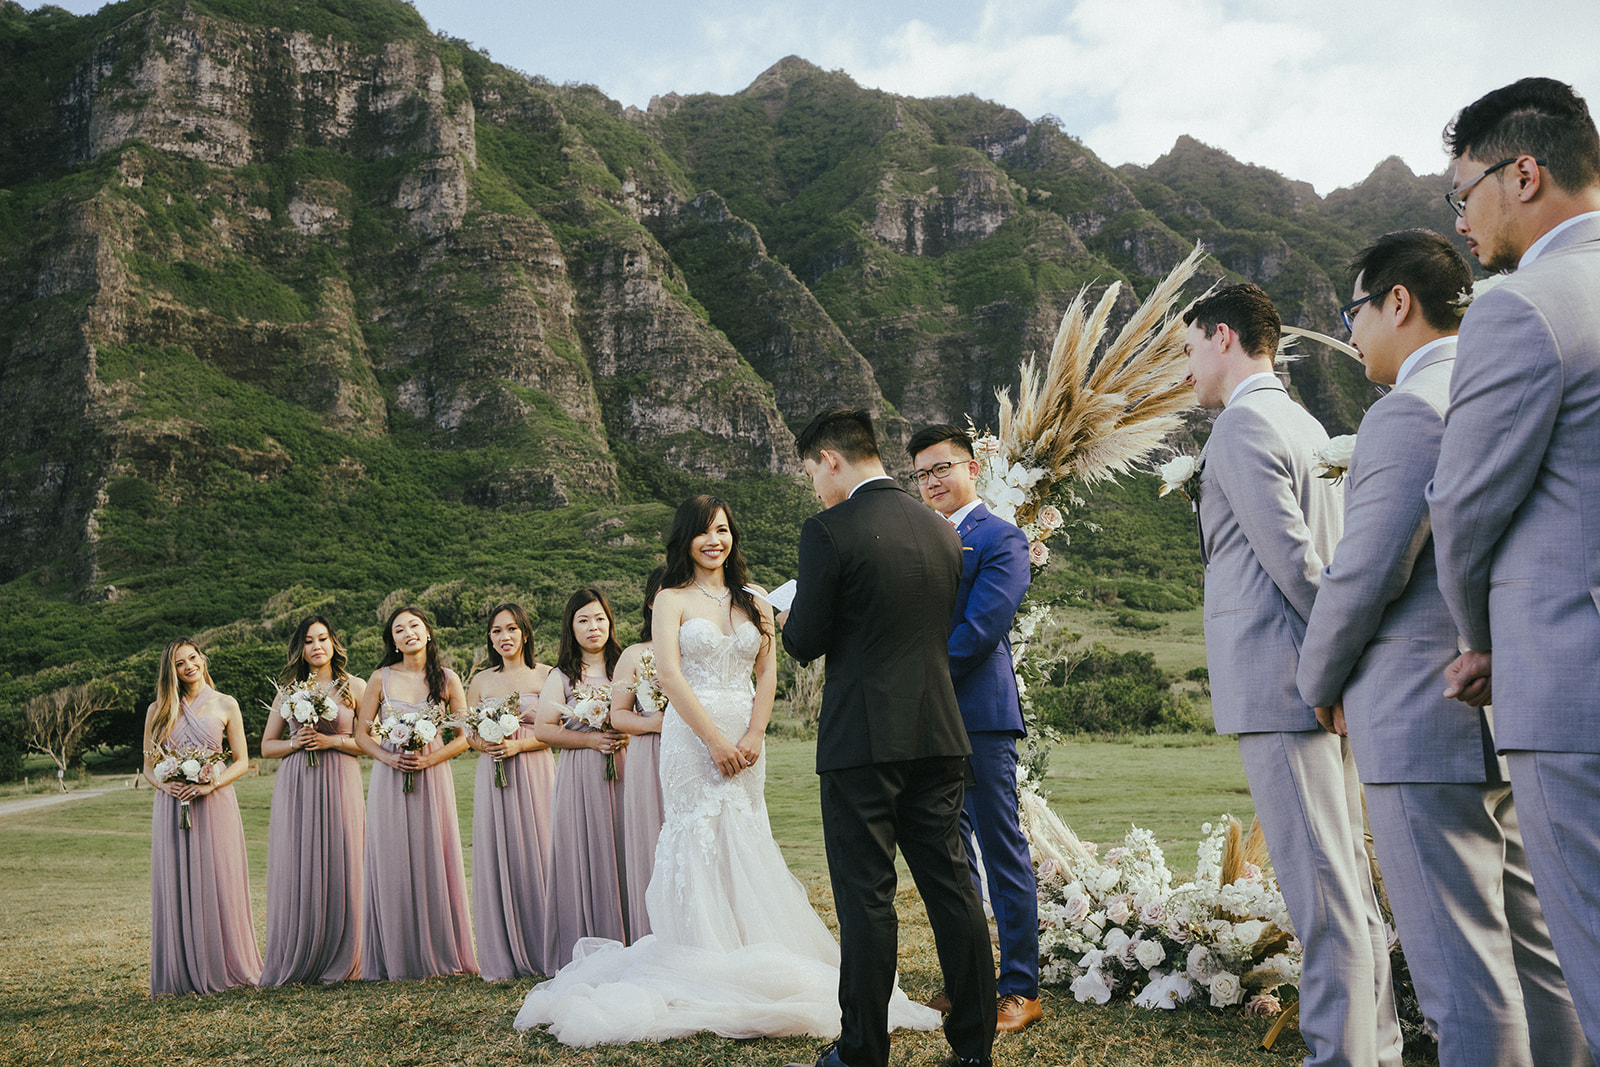 Wedding ceremony in Kualoa Ranch Hawaii